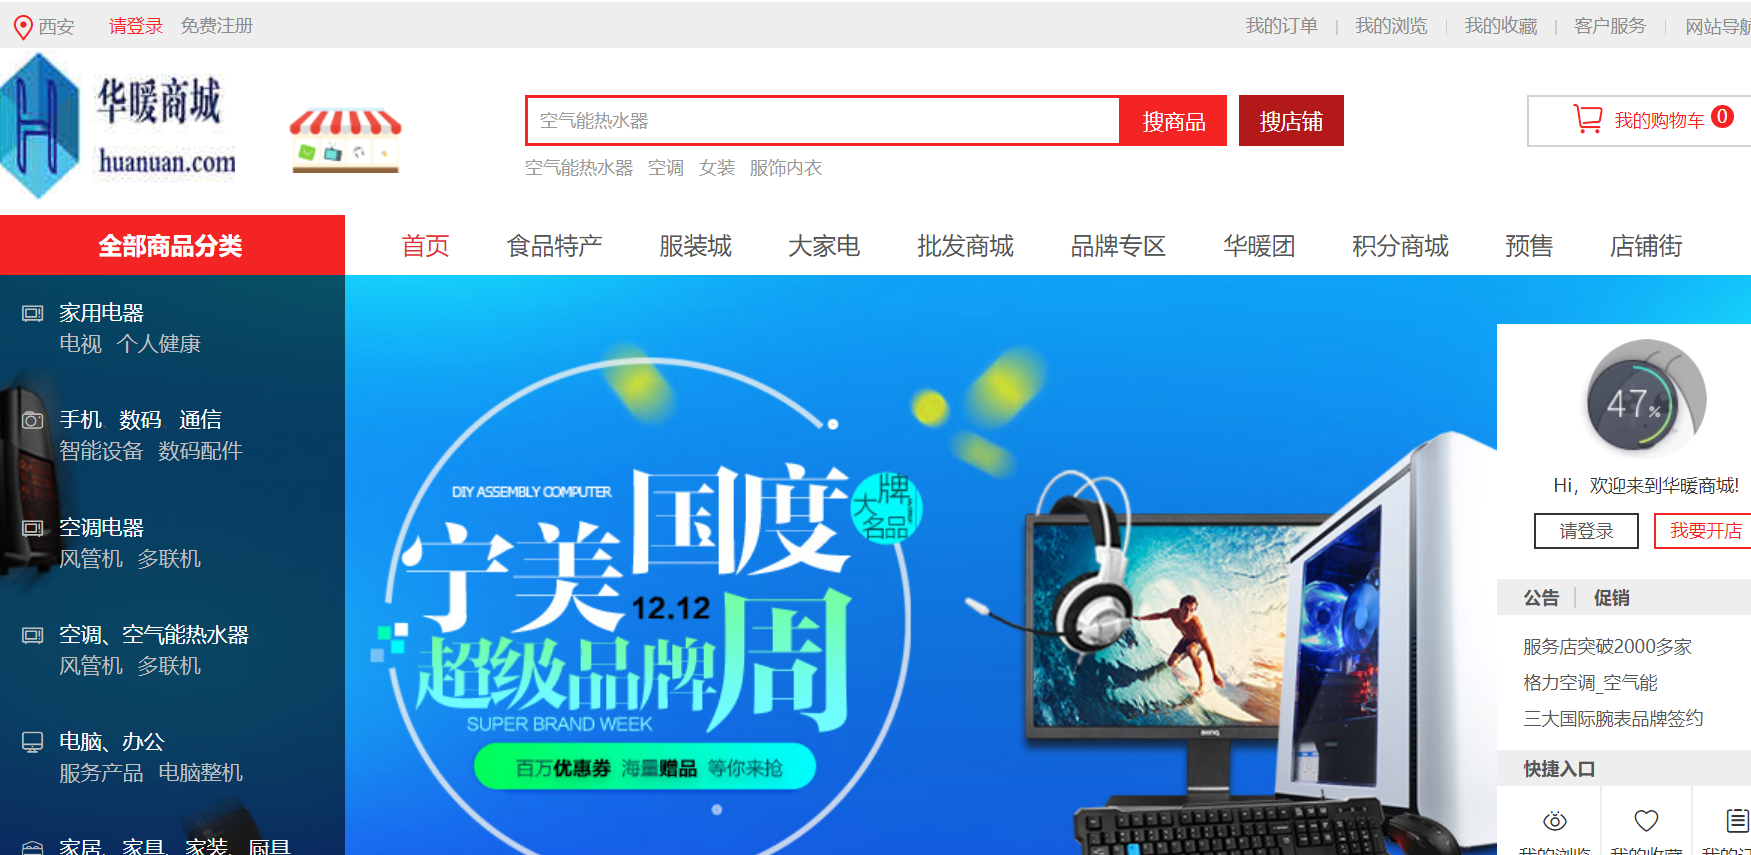 有消息！域名huanuan.com已启用！